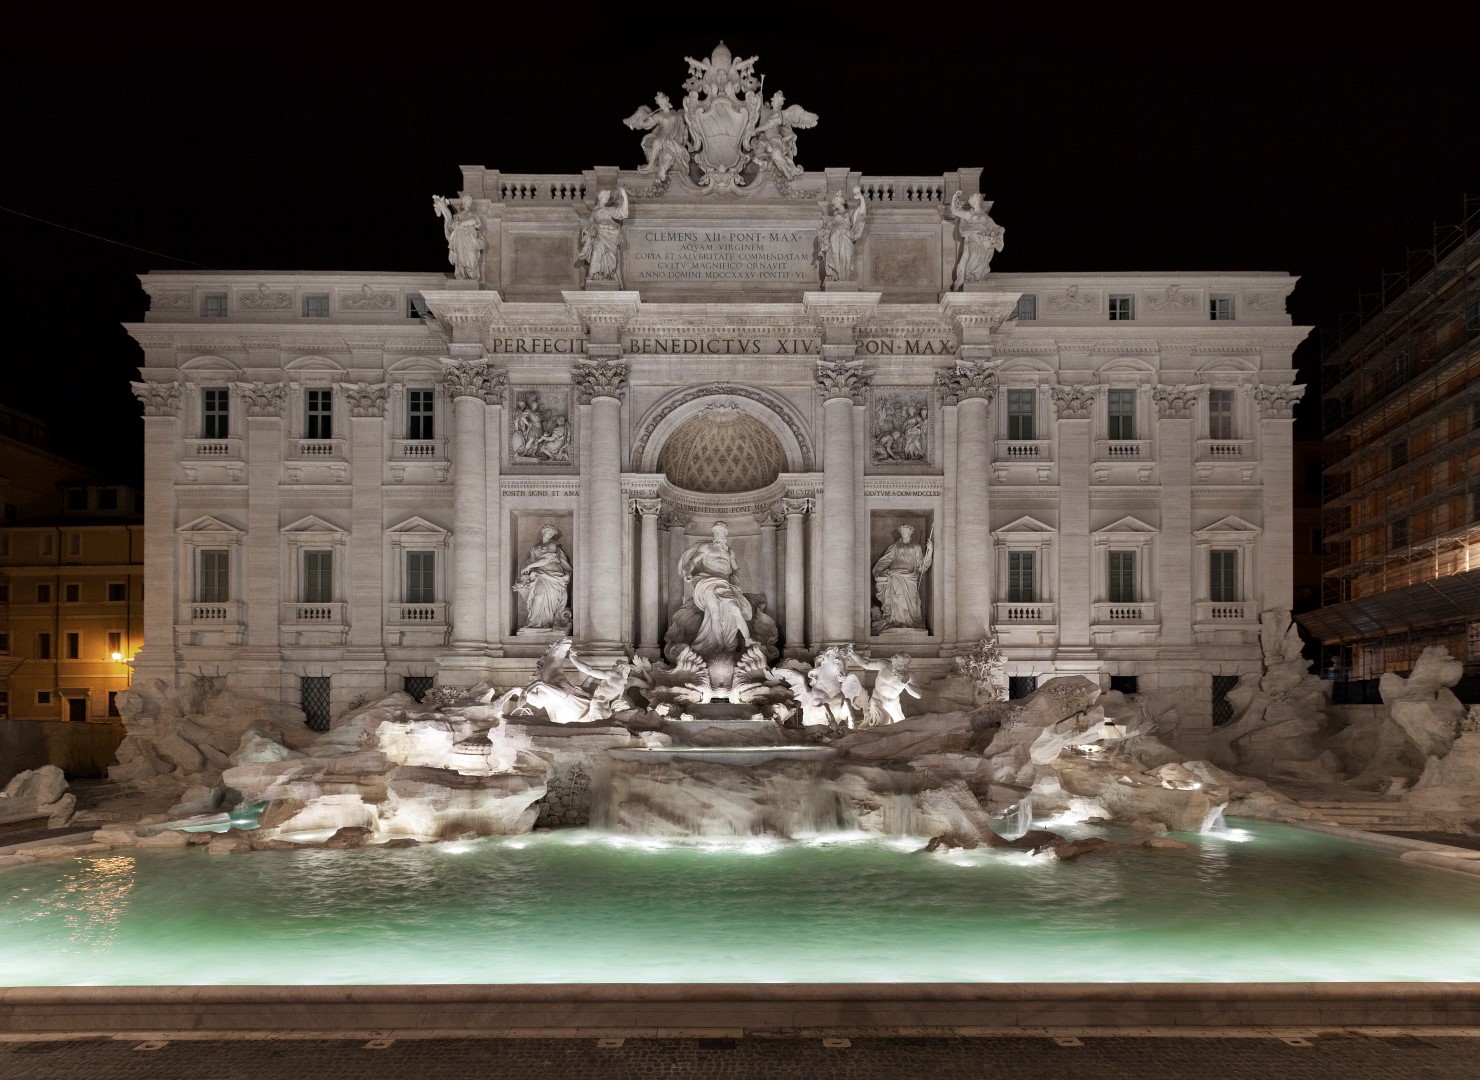 Fontana di Trevi restaurata: acqua e luce grazie al progetto Fendi for Fountains